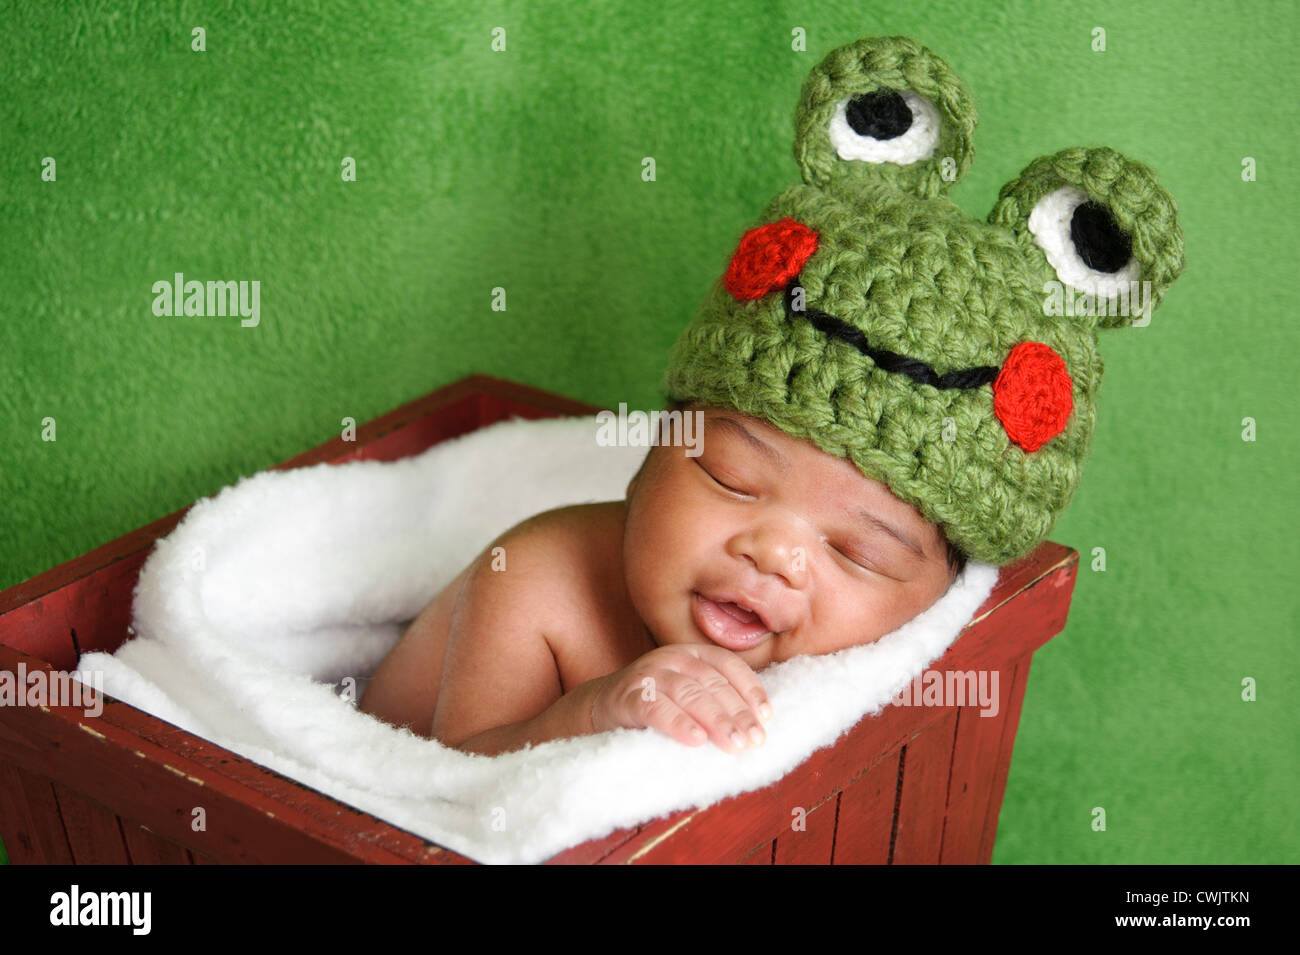 Jour 13 vieux sourire bébé nouveau-né garçon portant un chapeau vert grenouille en bonneterie. Il est en train de dormir dans une boîte en bois rouge. Banque D'Images